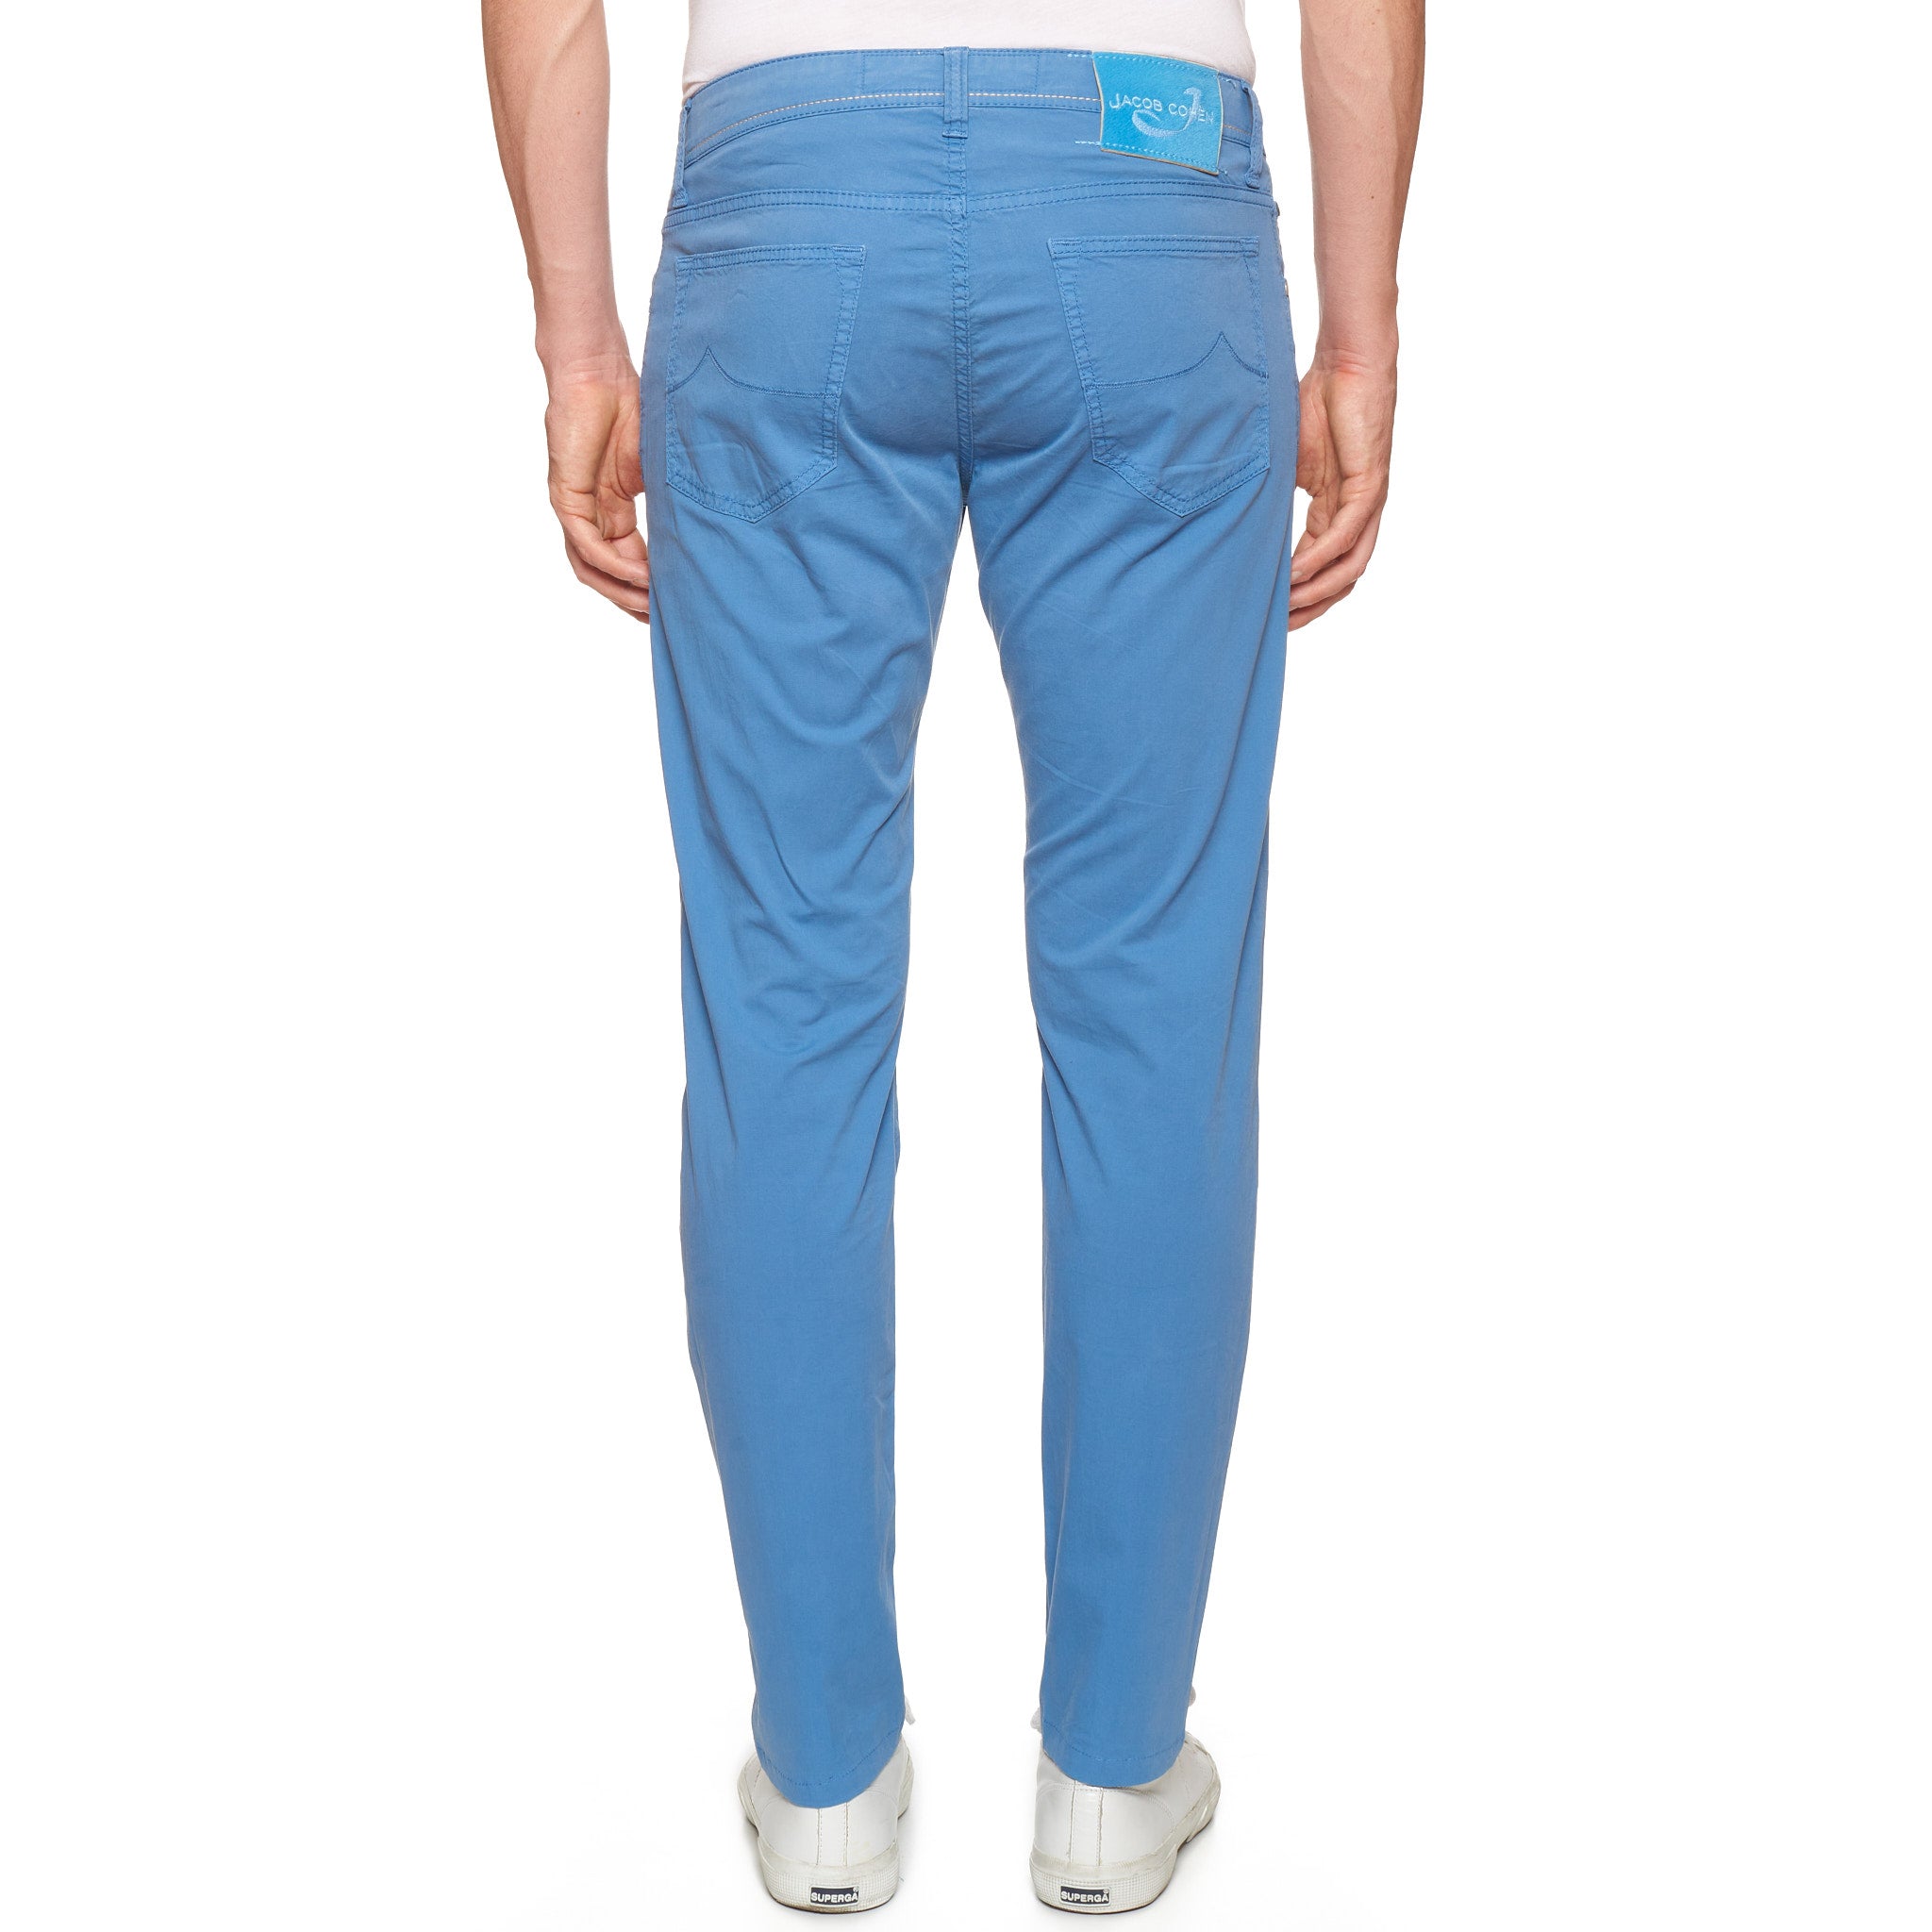 JACOB COHEN PW688 Comfort Blue Cotton Stretch Slim Fit Jeans Pants Size 33 JACOB COHEN